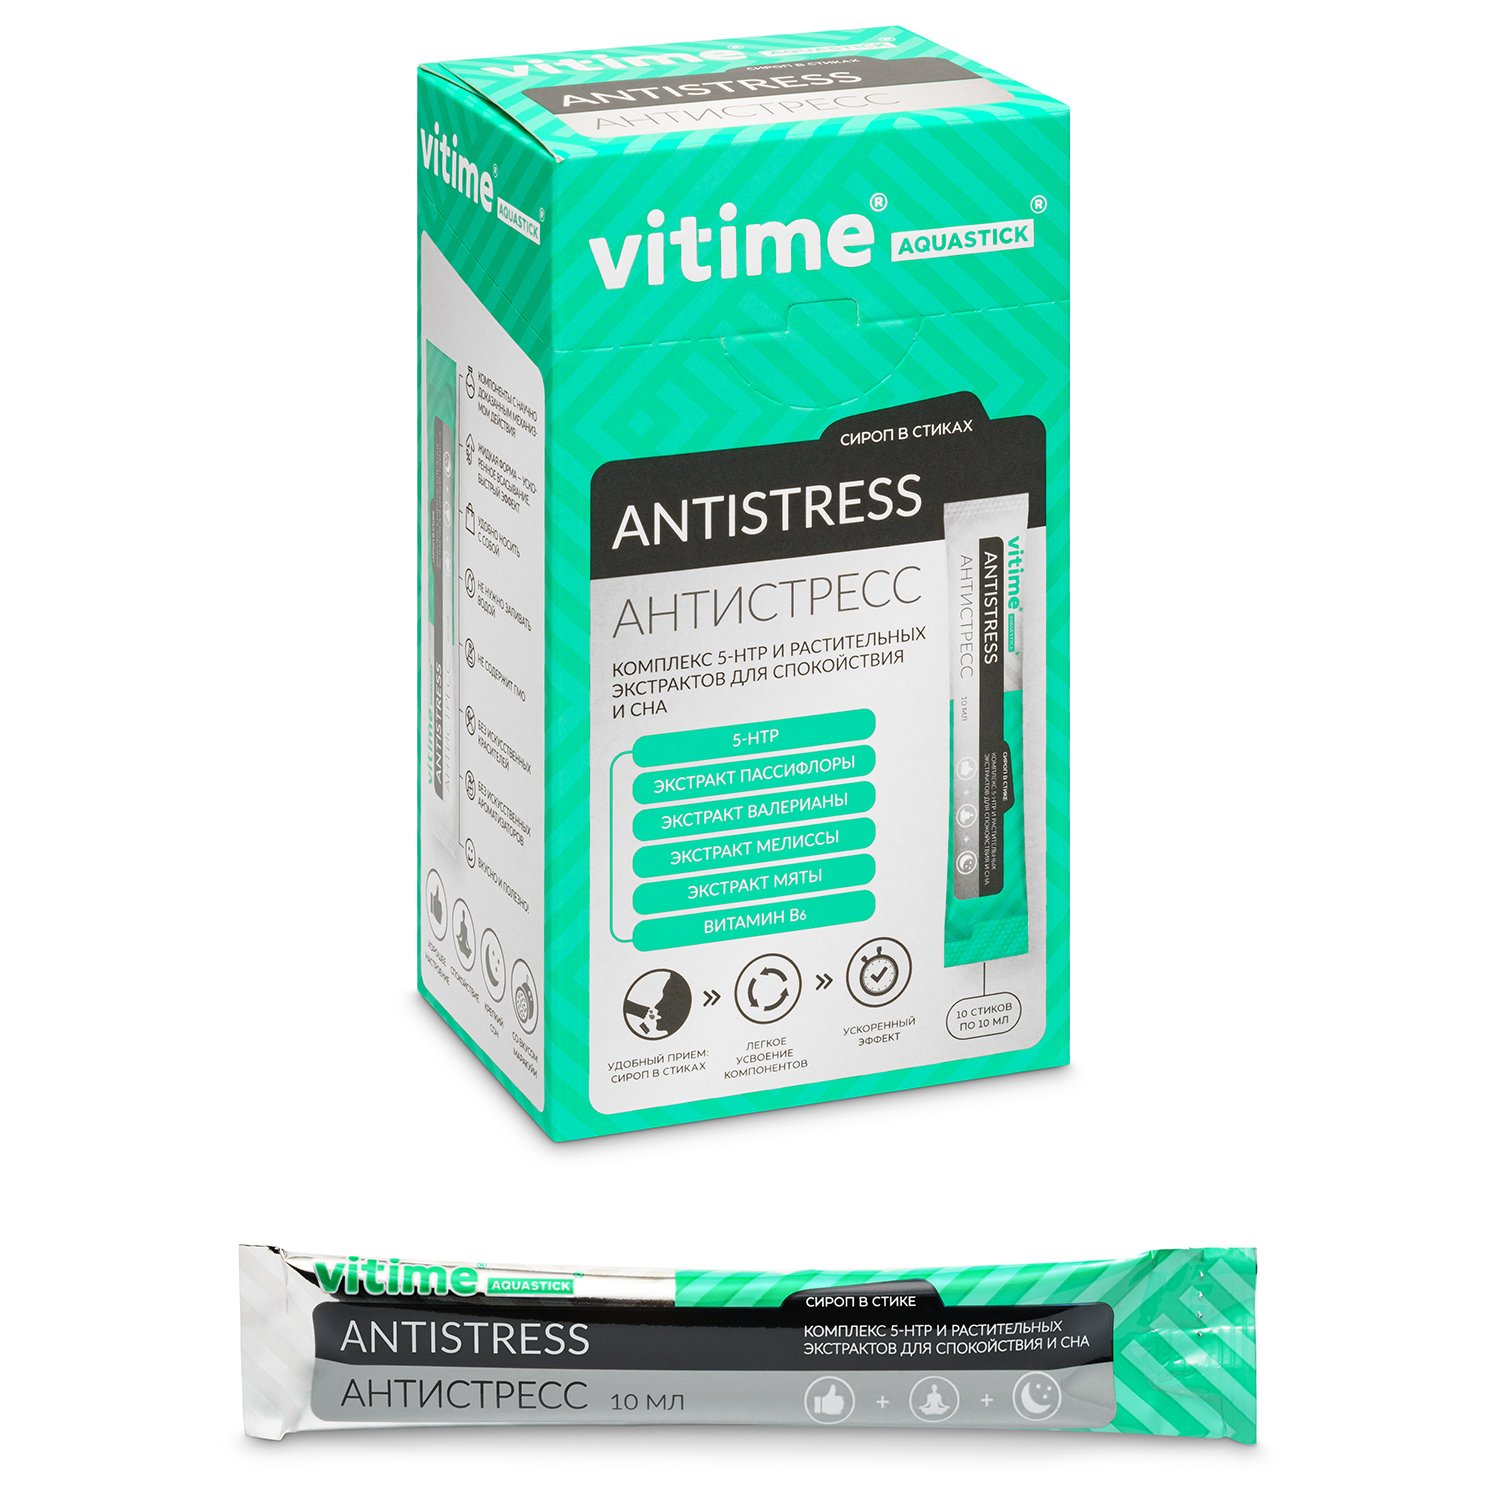 Биологически активная добавка VITime Aquastick Antistess сироп 10стиков - фото 2